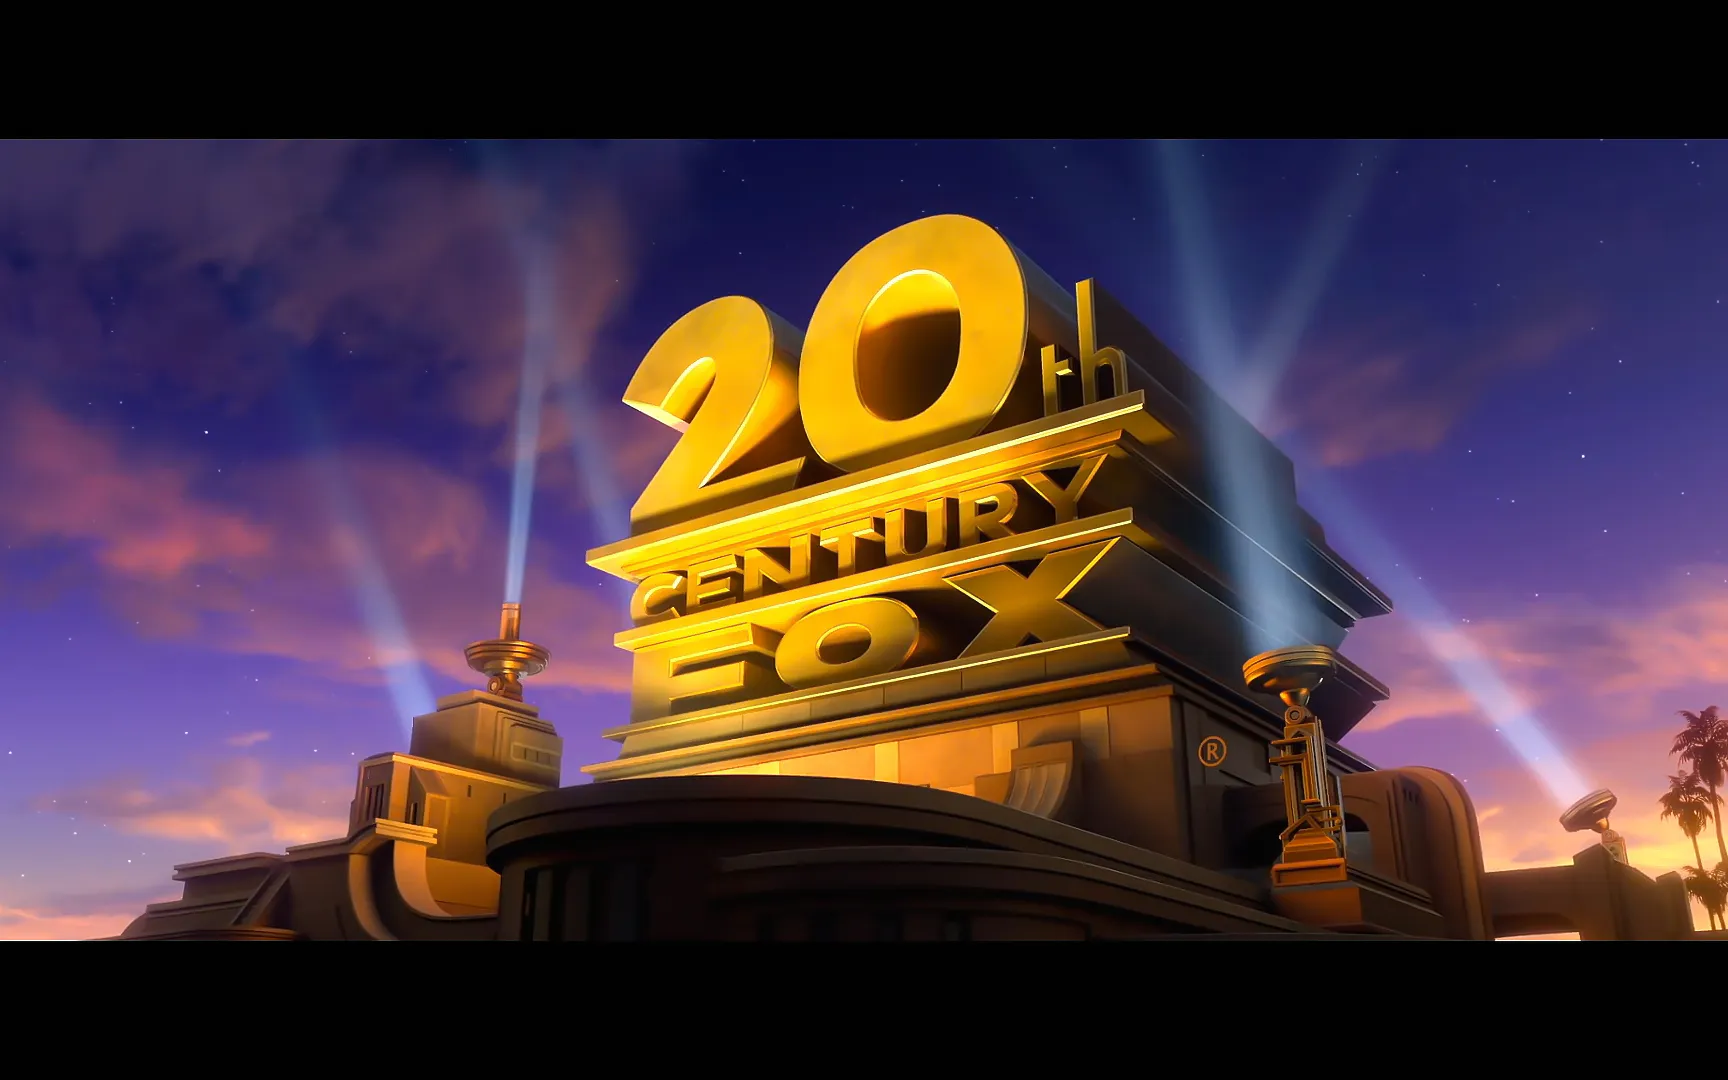 二十世纪福克斯电影公司20th开场片头AE模板-后期素材库